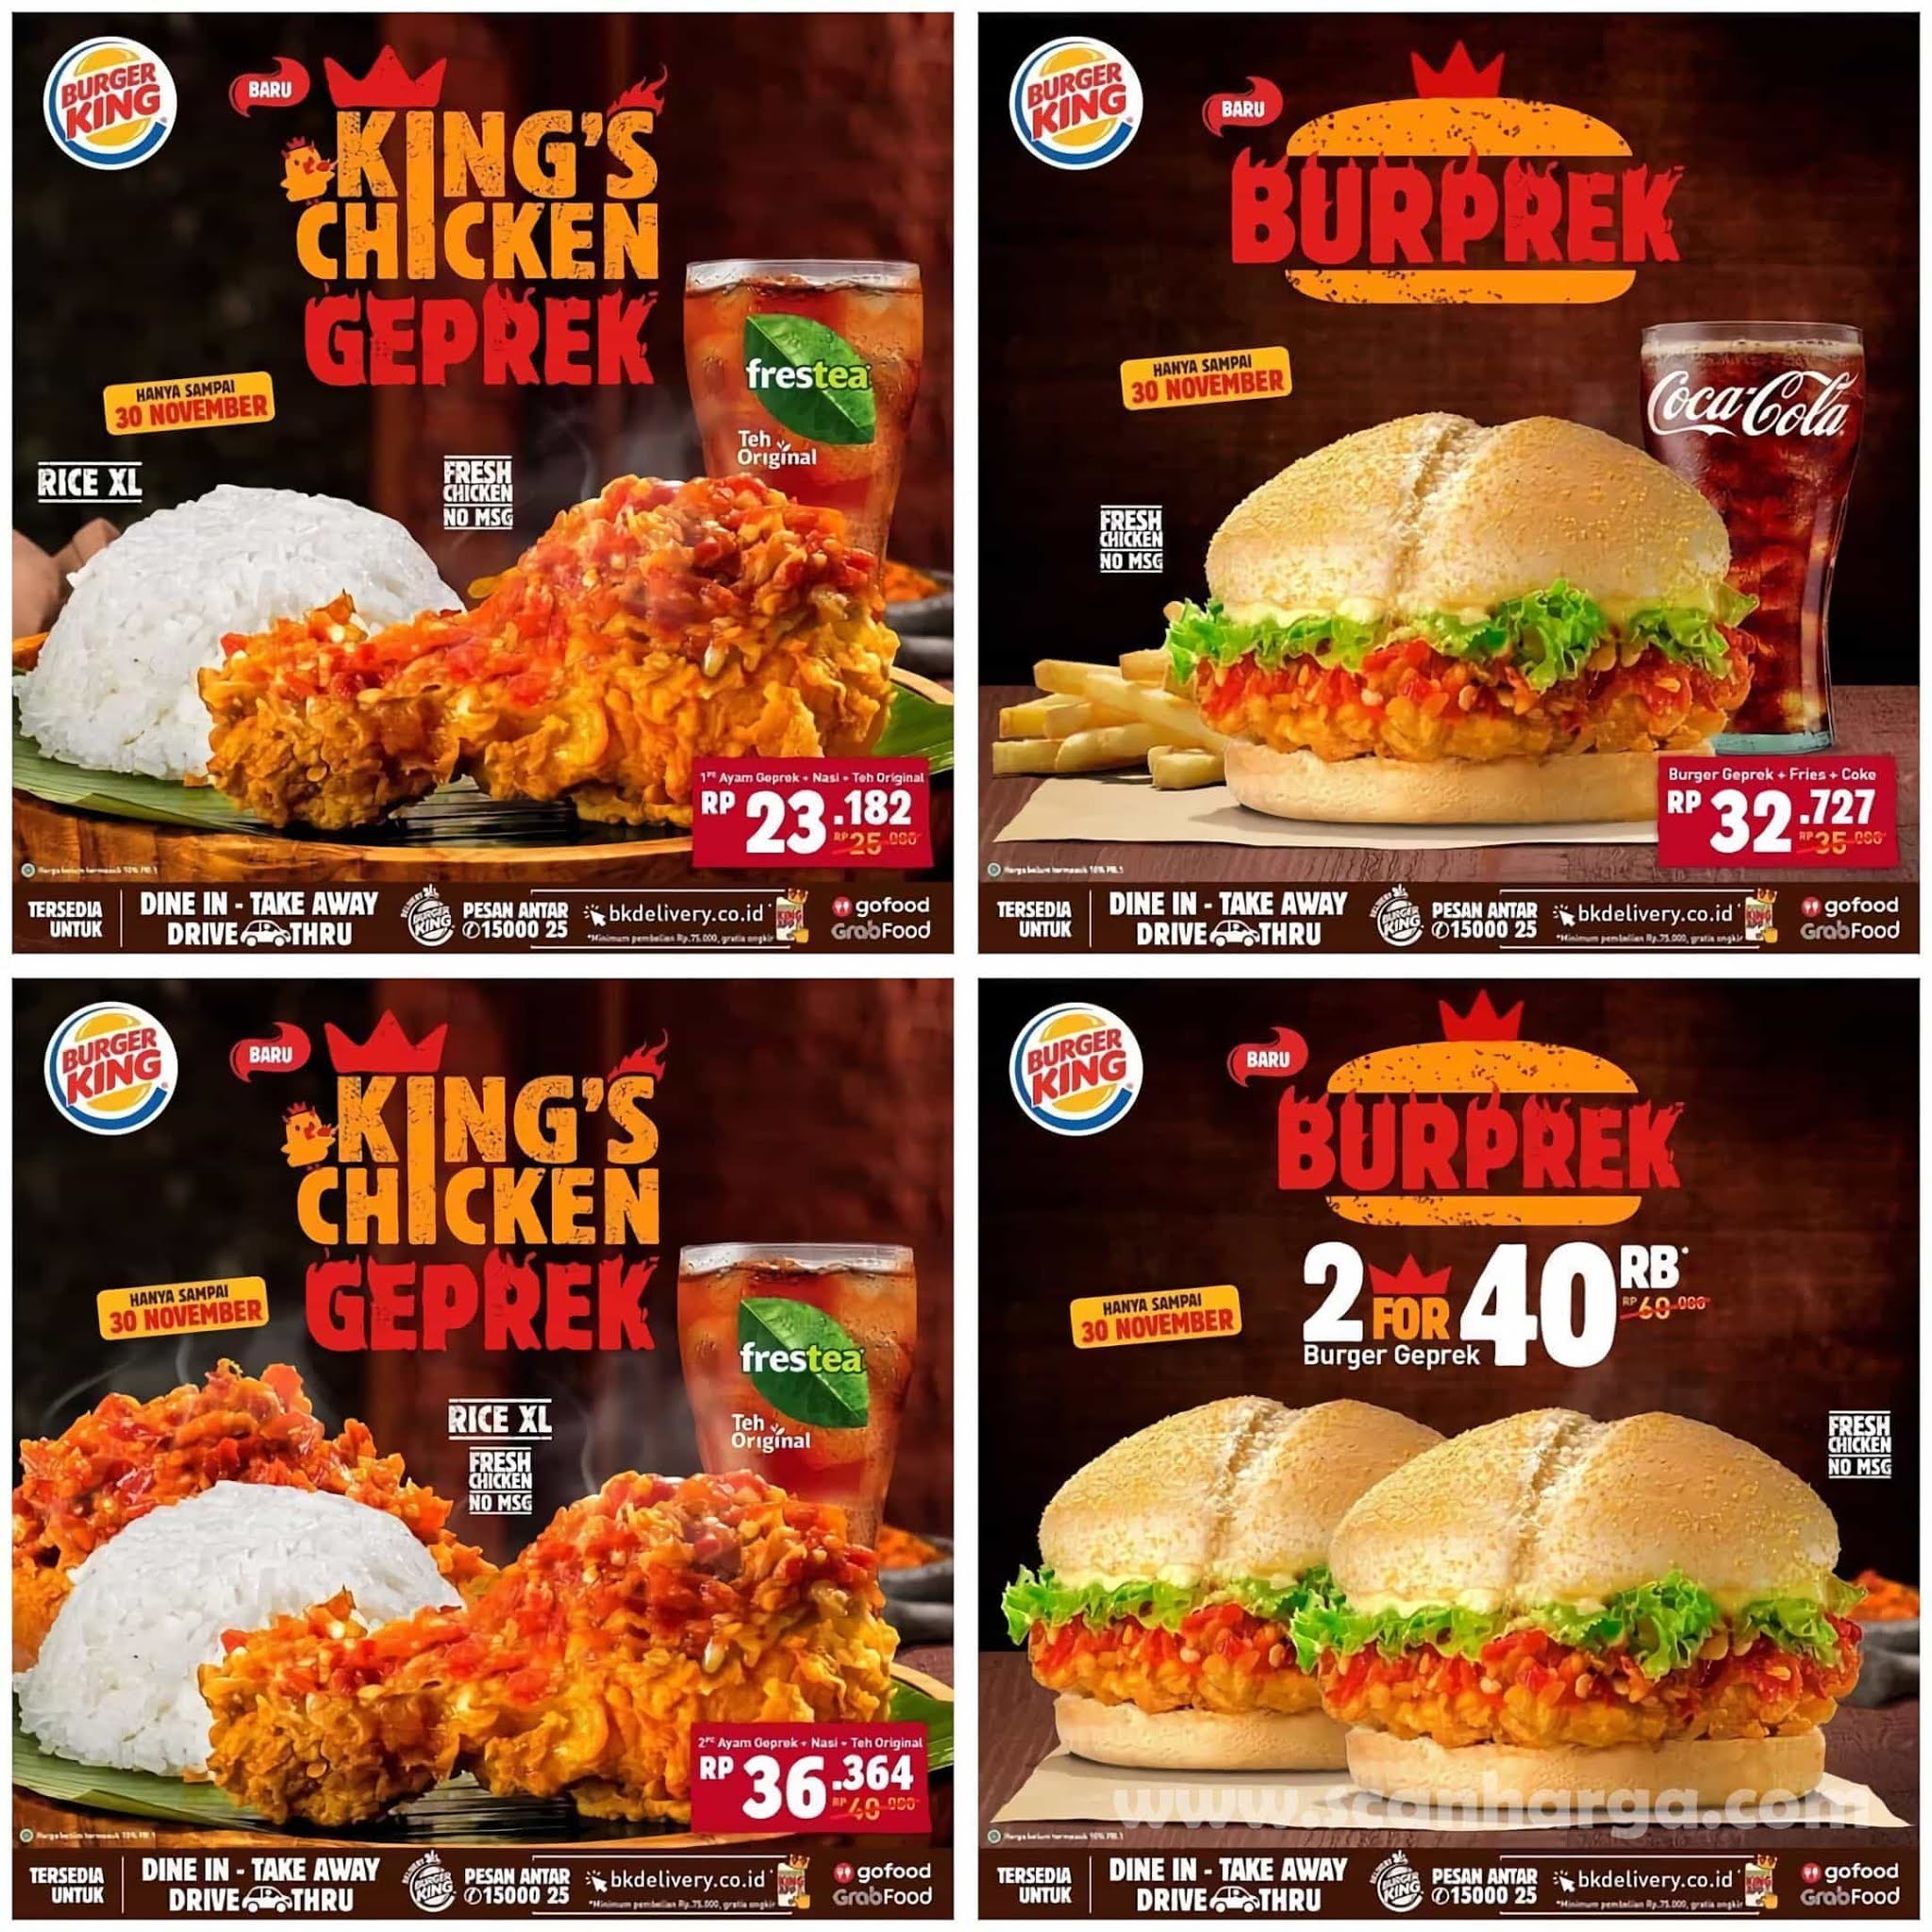 Burger King BUPREK & CHICKEN GEPREK mulai dari Rp 23.182,- hingga 30 November 2020 2